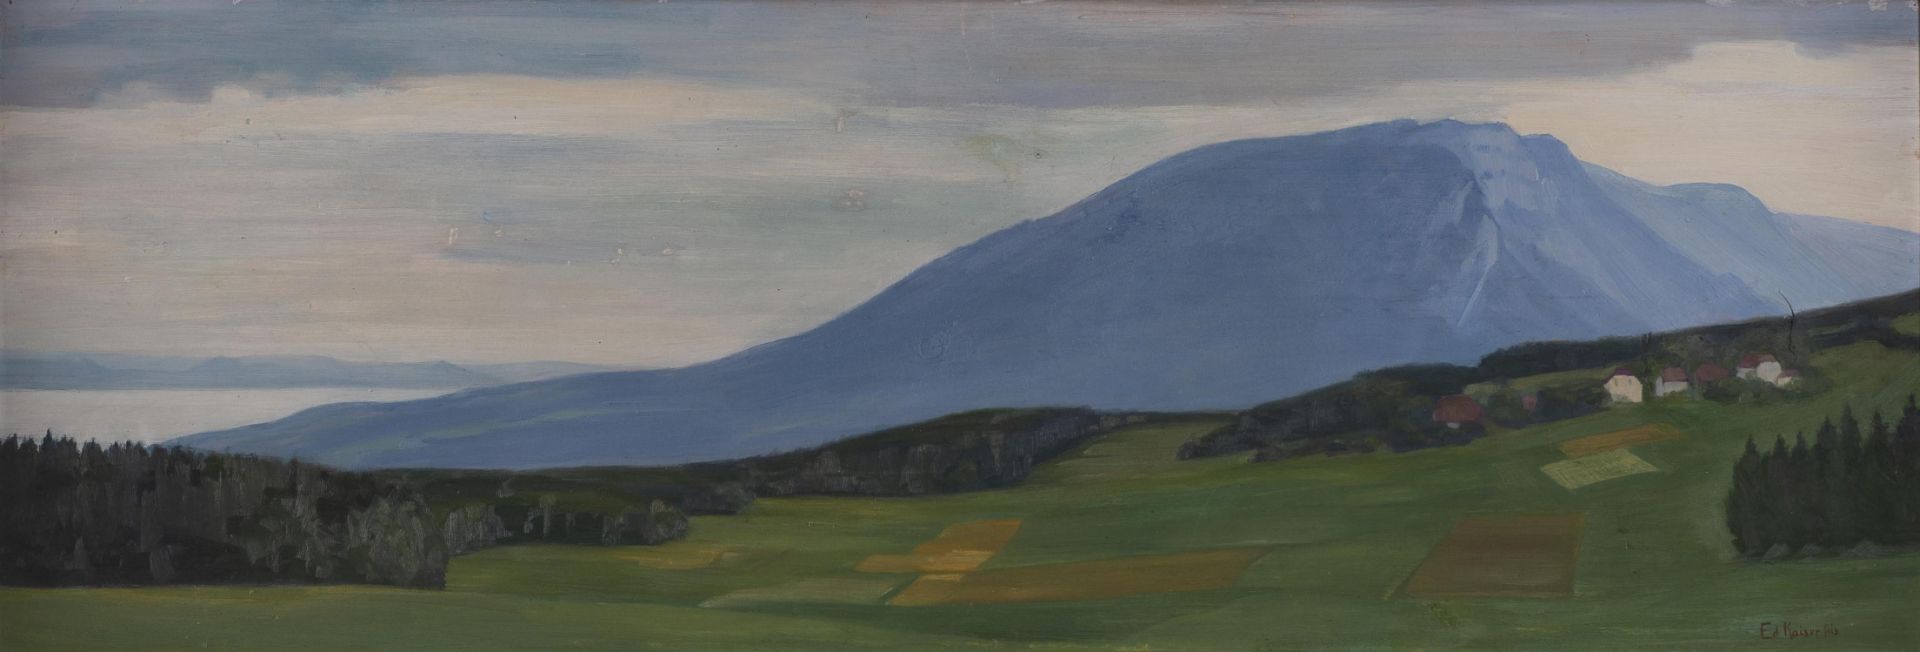 Edouard II Kaiser Fils (1892-1957), "Le Creux du vent"